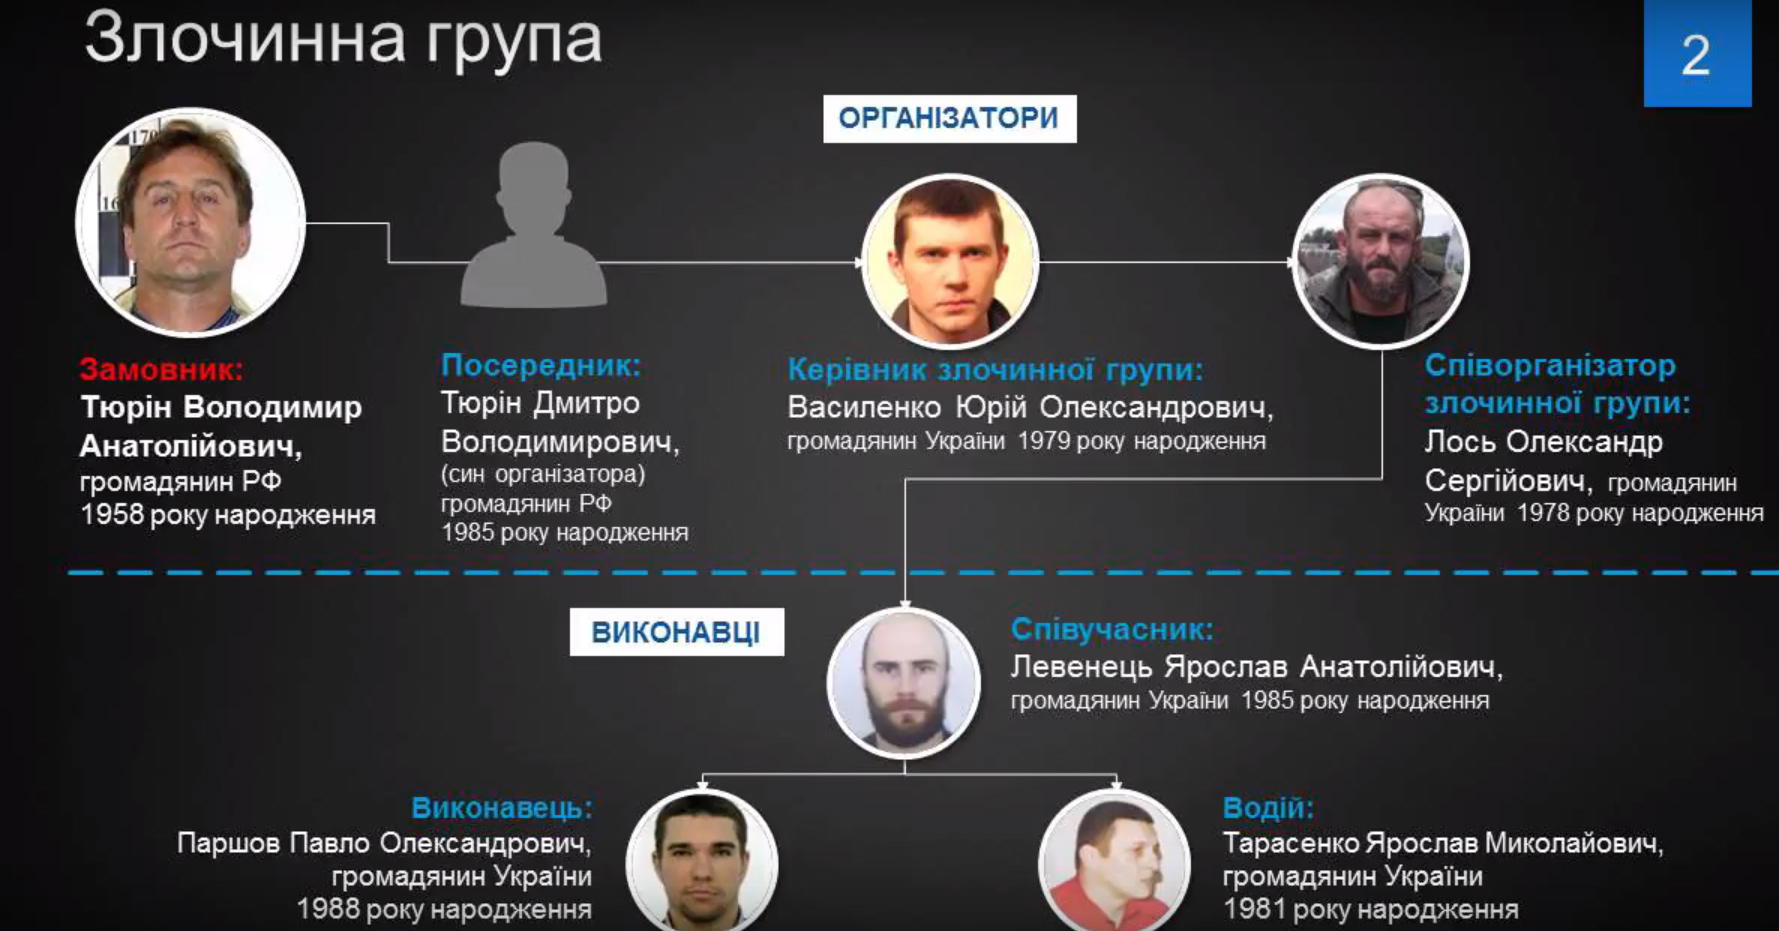 ФСБ, вор в законе и 5 украинцев. Как и кто убил Вороненкова.